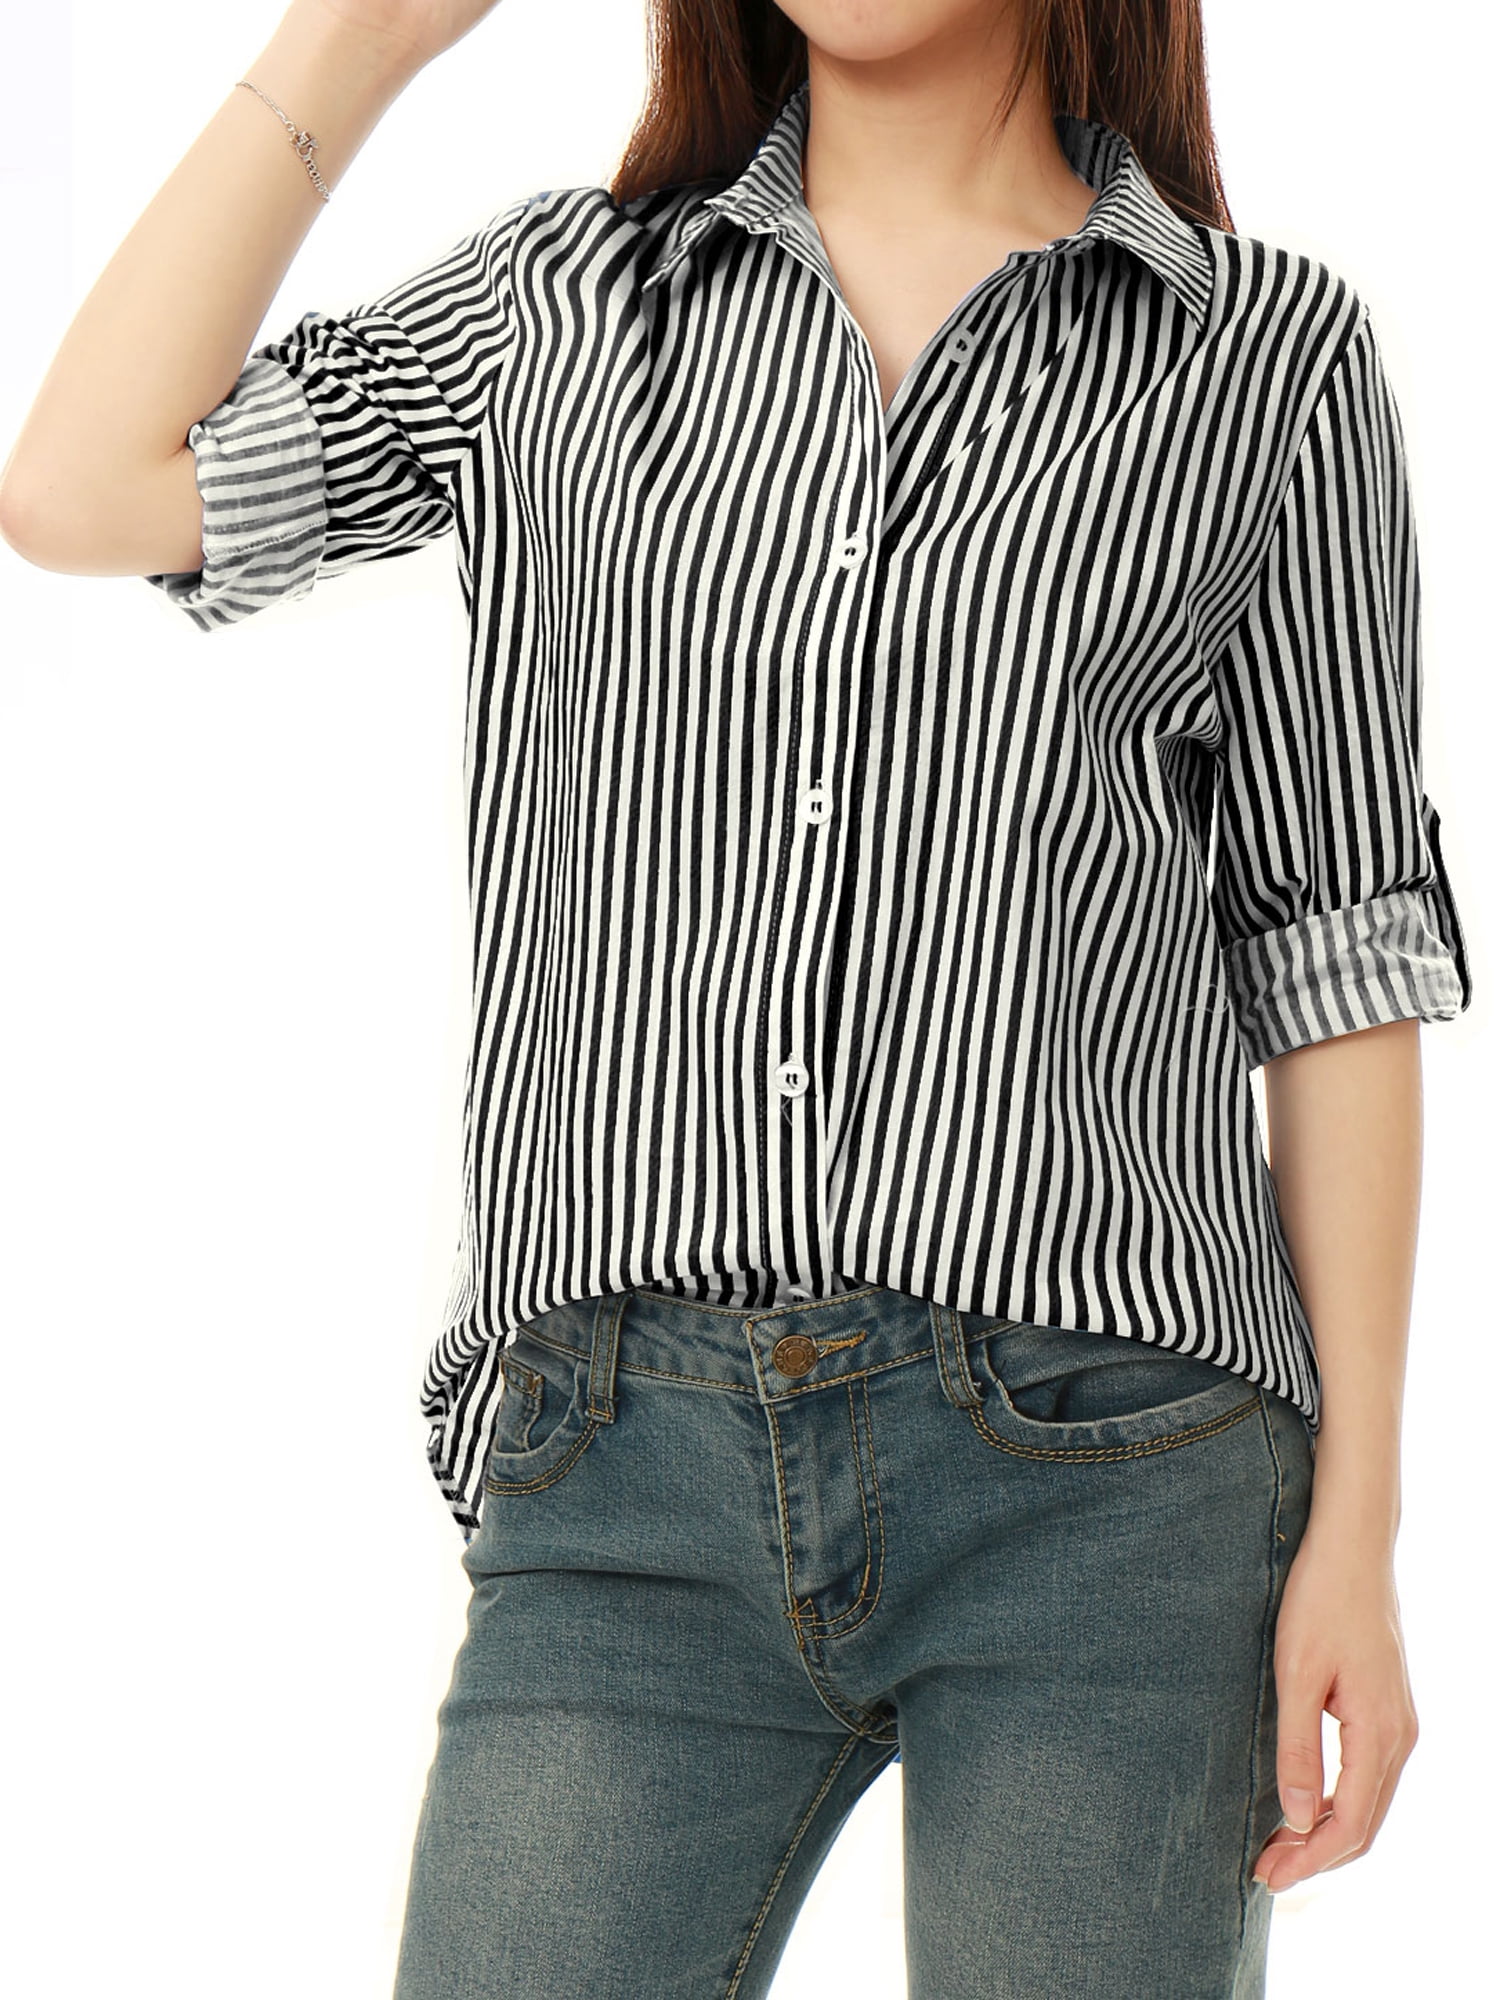 Unique Bargains - Women Vertical Stripes High Low Hem Long Roll Up